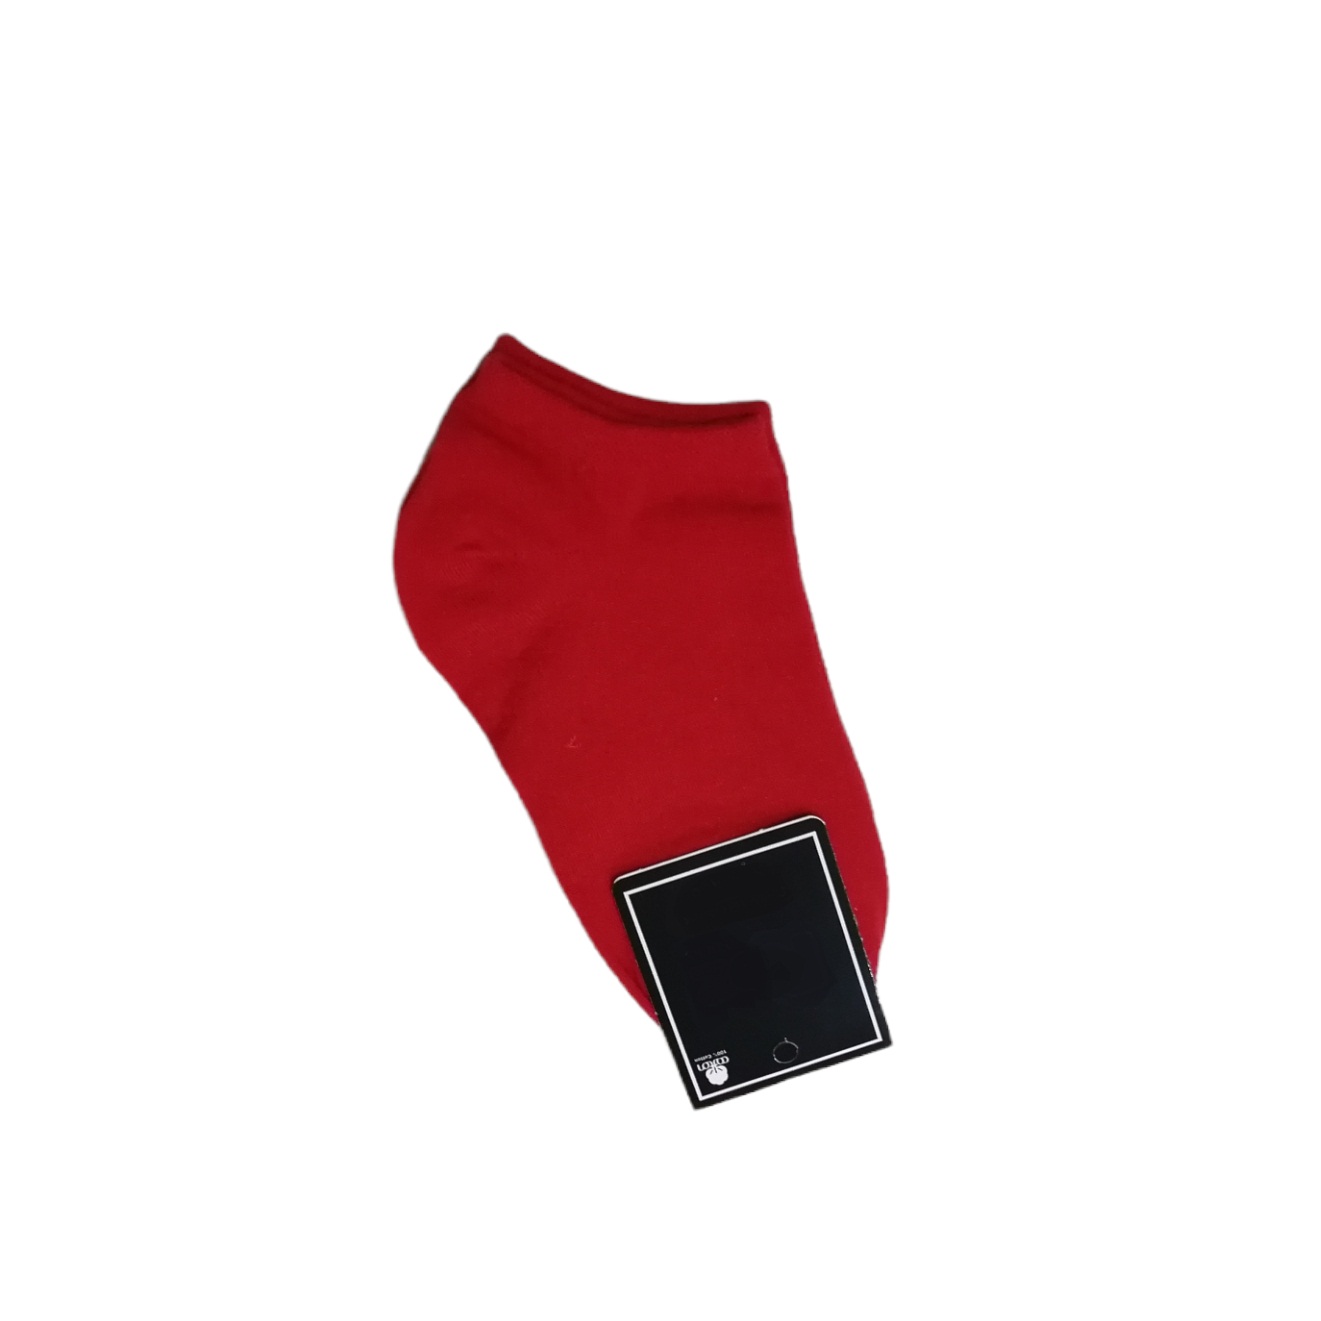 جوراب ساق کوتاه زنانه مدل مچی ساده رنگ قرمز